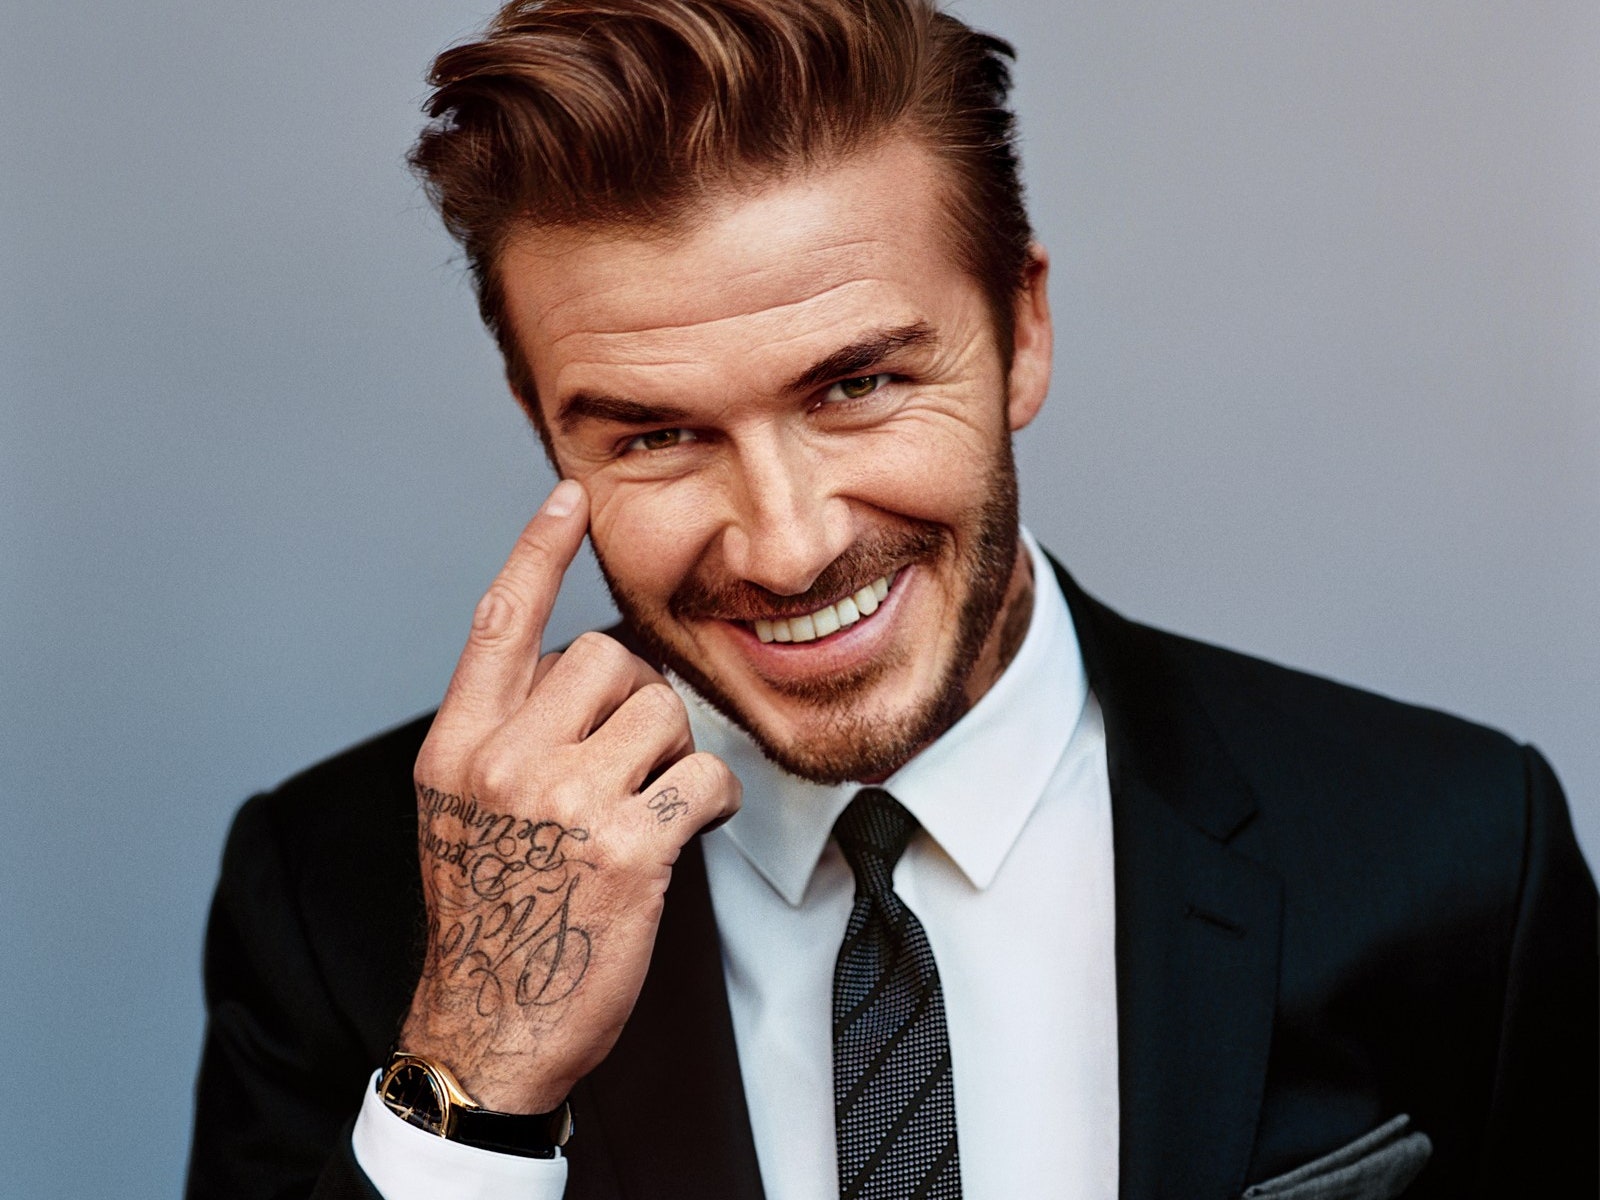 Ο David Beckham θα είναι κούκλος και στα βαθιά γεράματα (έχουμε αποδείξεις!) Για χάρη μιας καμπάνιας για την ελονοσία, ο David Beckham μεταμορφώθηκε σε ηλικιωμένο. Περιμένουμε τα σχόλιά σου...